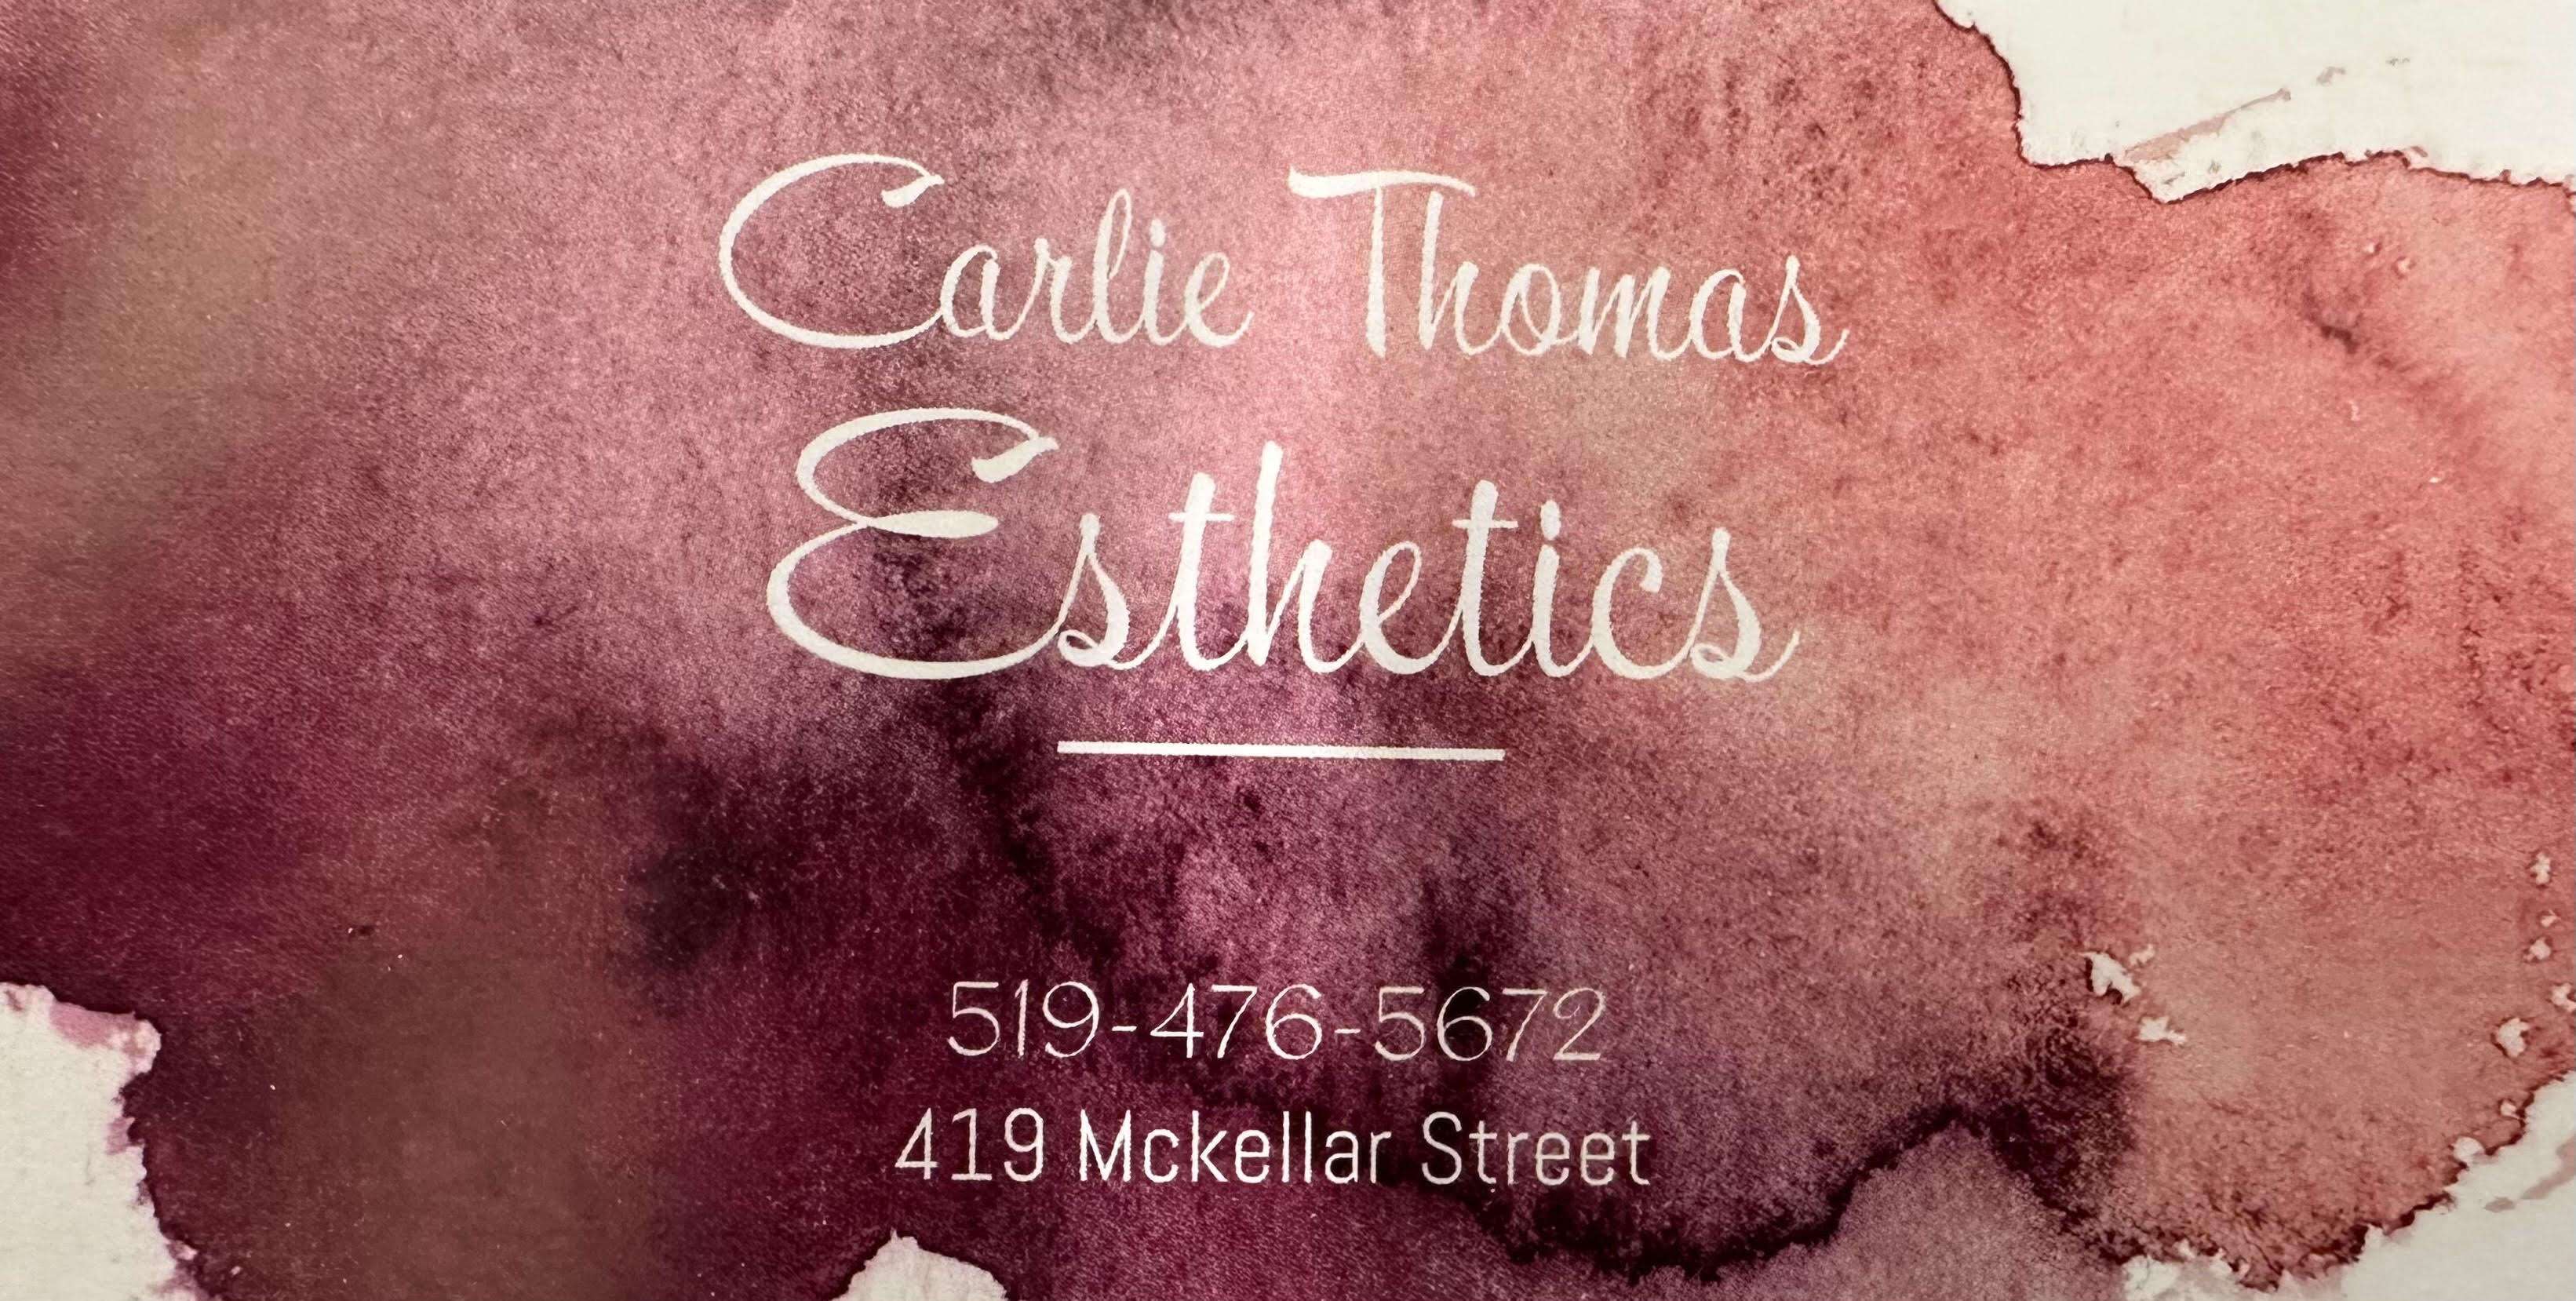 Carlie Thomas Esthetics 